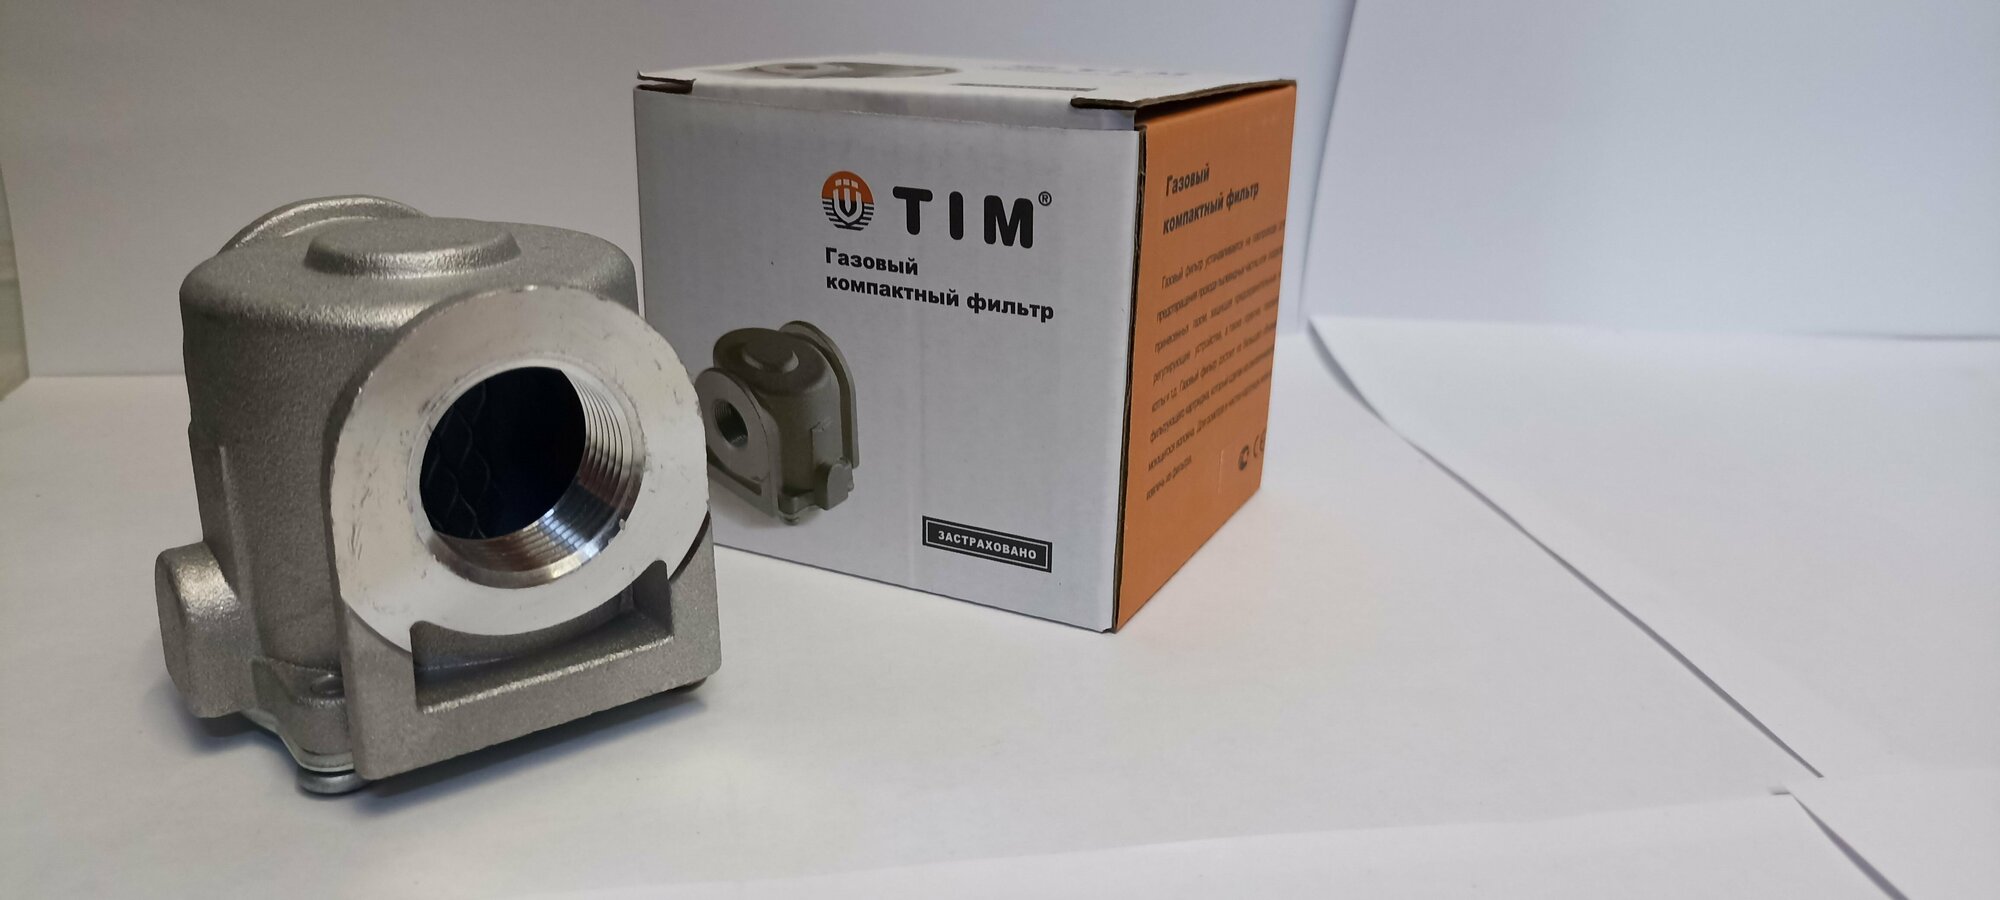 TIM Газовый компактный фильтр FMC03-2. 3/4"